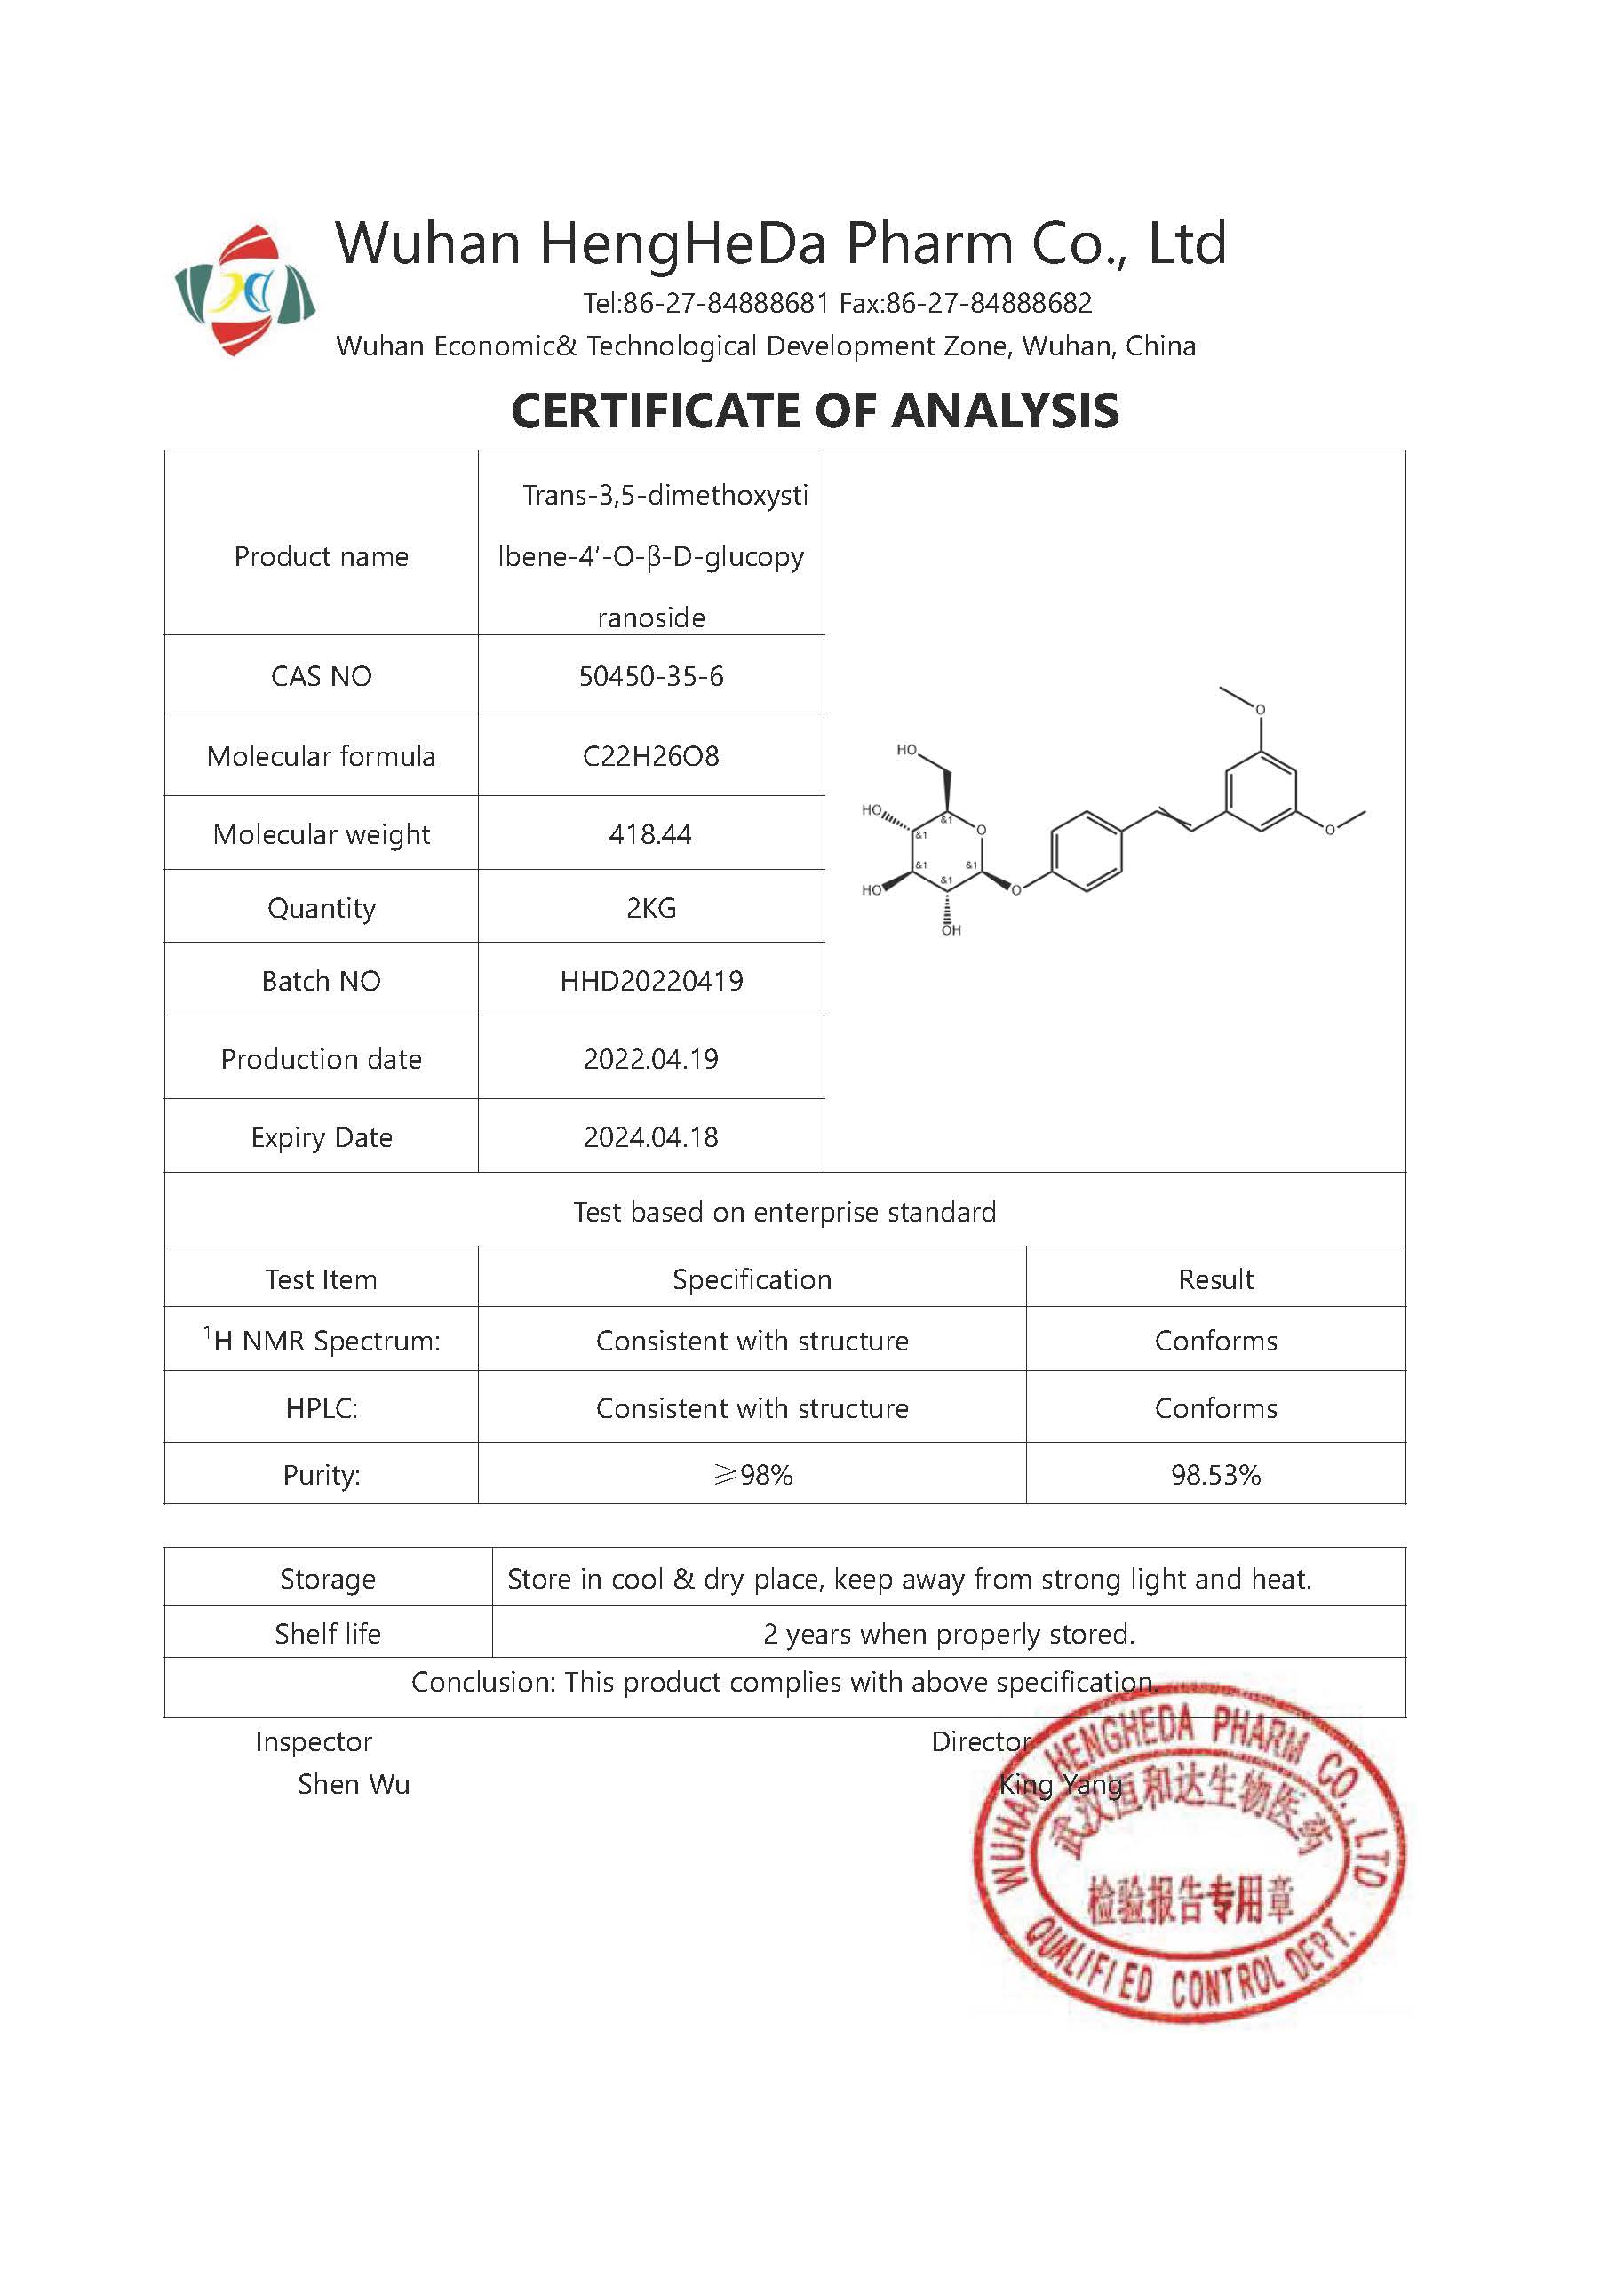 شراء عبر 3،5-ديميثوكسيستيلبين-4′-O-β-D-glucopyranoside CAS 50450-35-6 ,عبر 3،5-ديميثوكسيستيلبين-4′-O-β-D-glucopyranoside CAS 50450-35-6 الأسعار ·عبر 3،5-ديميثوكسيستيلبين-4′-O-β-D-glucopyranoside CAS 50450-35-6 العلامات التجارية ,عبر 3،5-ديميثوكسيستيلبين-4′-O-β-D-glucopyranoside CAS 50450-35-6 الصانع ,عبر 3،5-ديميثوكسيستيلبين-4′-O-β-D-glucopyranoside CAS 50450-35-6 اقتباس ·عبر 3،5-ديميثوكسيستيلبين-4′-O-β-D-glucopyranoside CAS 50450-35-6 الشركة